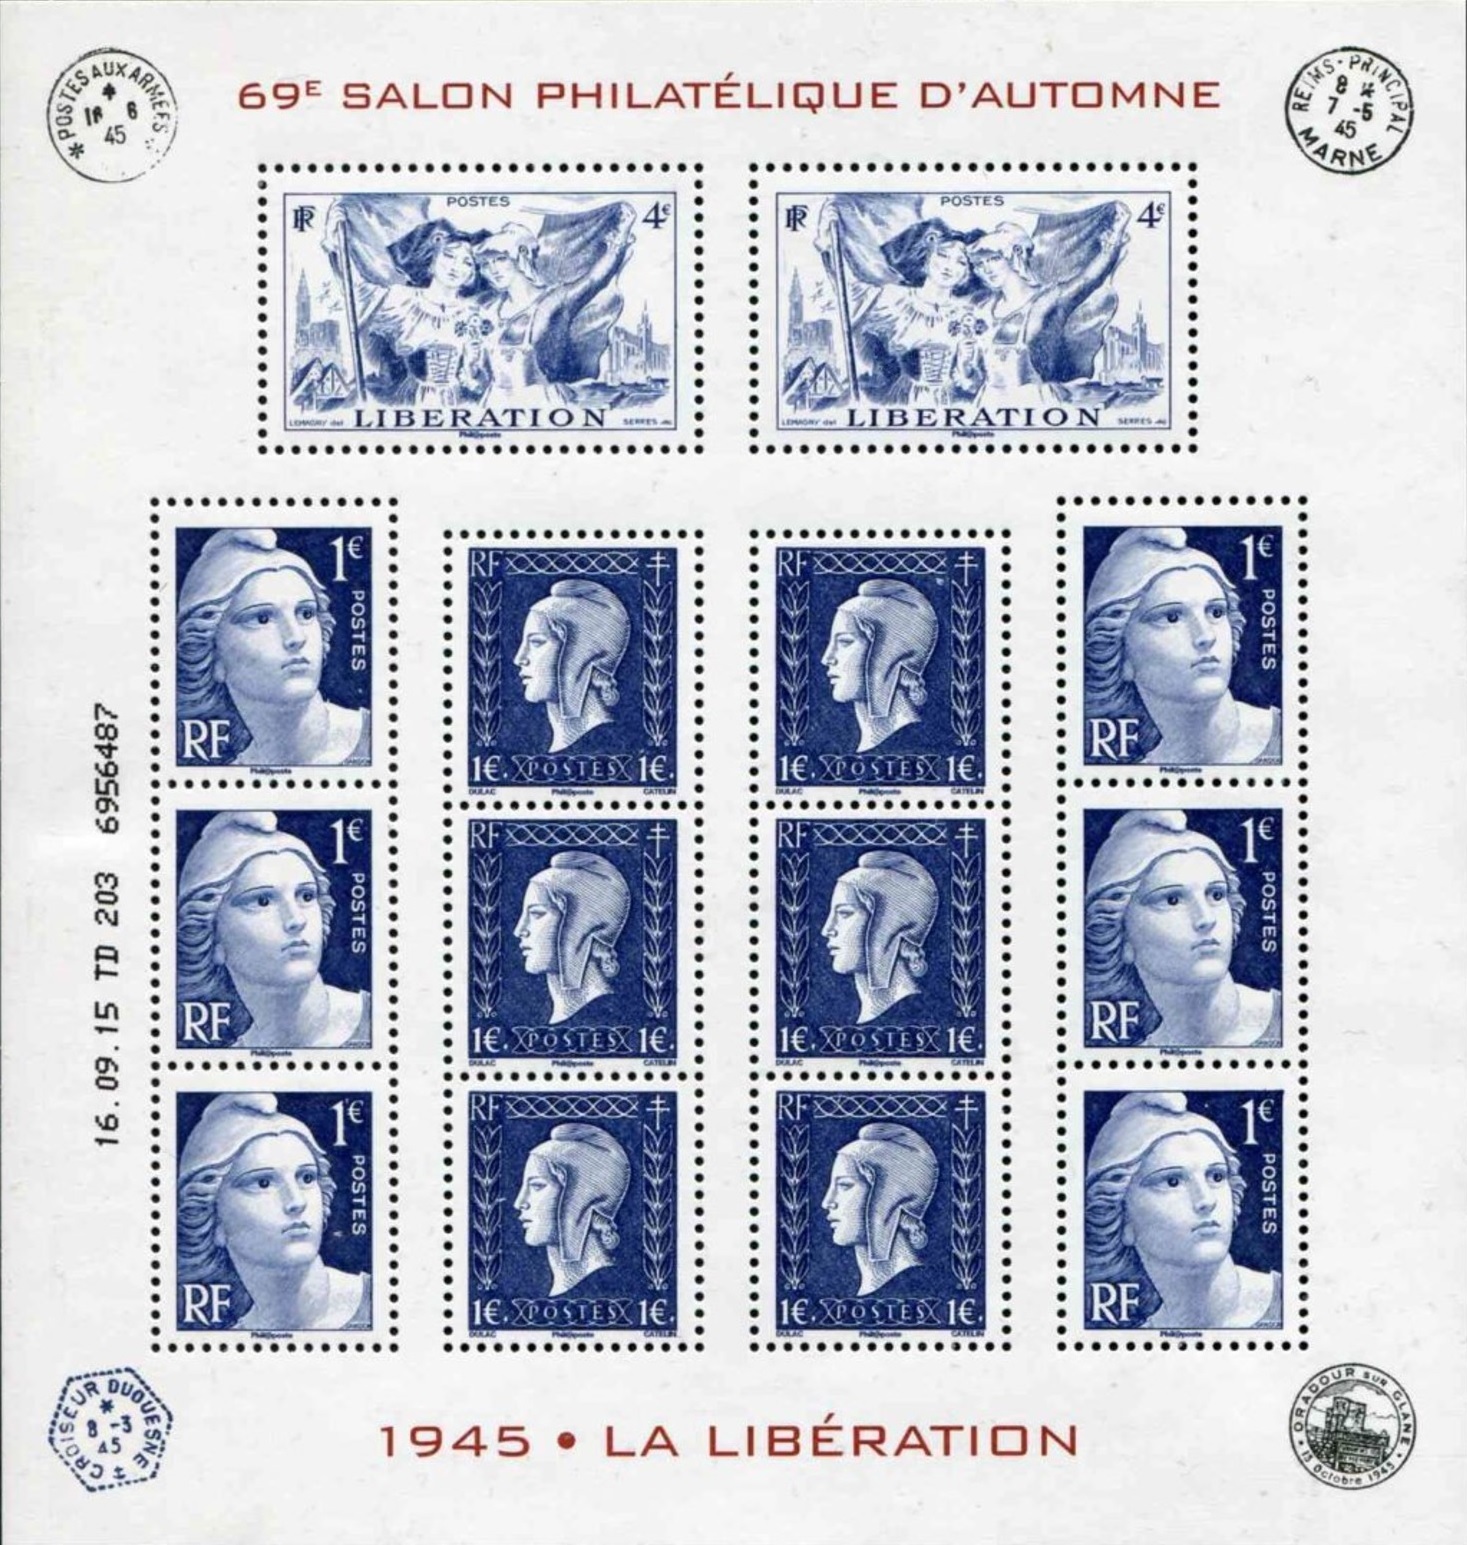 la Libération - 69e Salon philatélique d'automne 2015